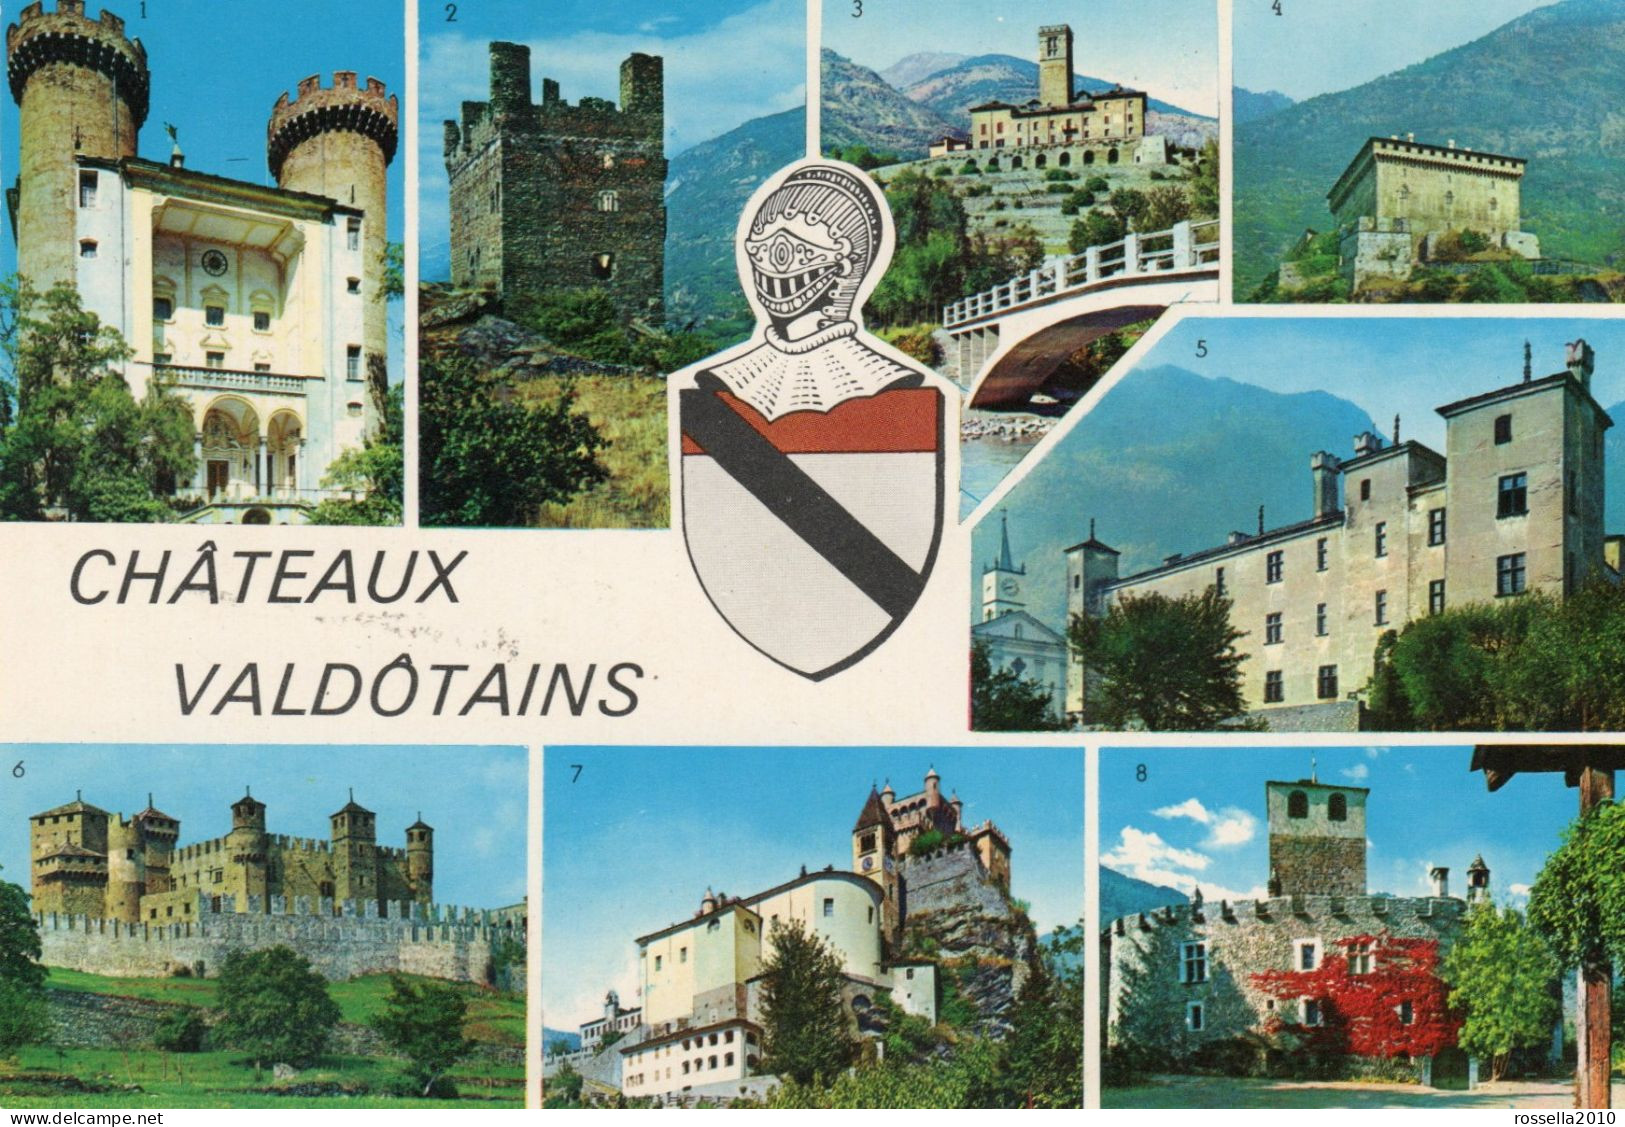 CARTOLINA 1975 ITALIA VALLE D' AOSTA CASTELLI CHATEAU VALDOTAINS SALUTI VEDUTINE Italy Postcard ITALIEN Ansichtskarten - Gruss Aus.../ Grüsse Aus...